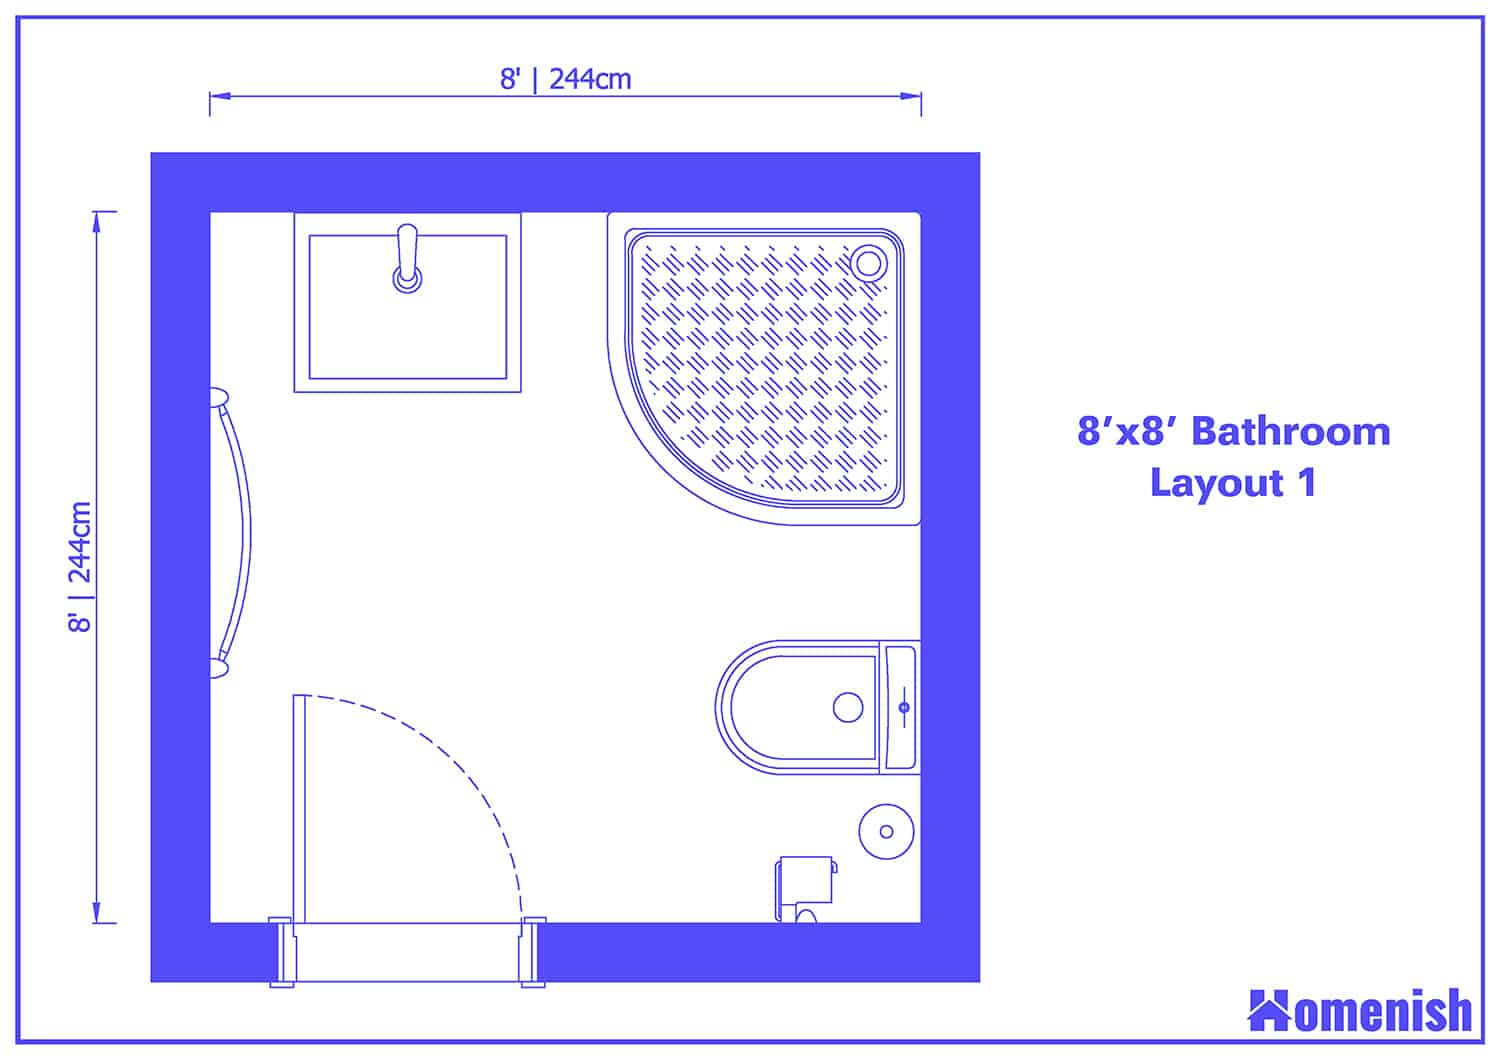 8' x 8' Bathroom Layout 1